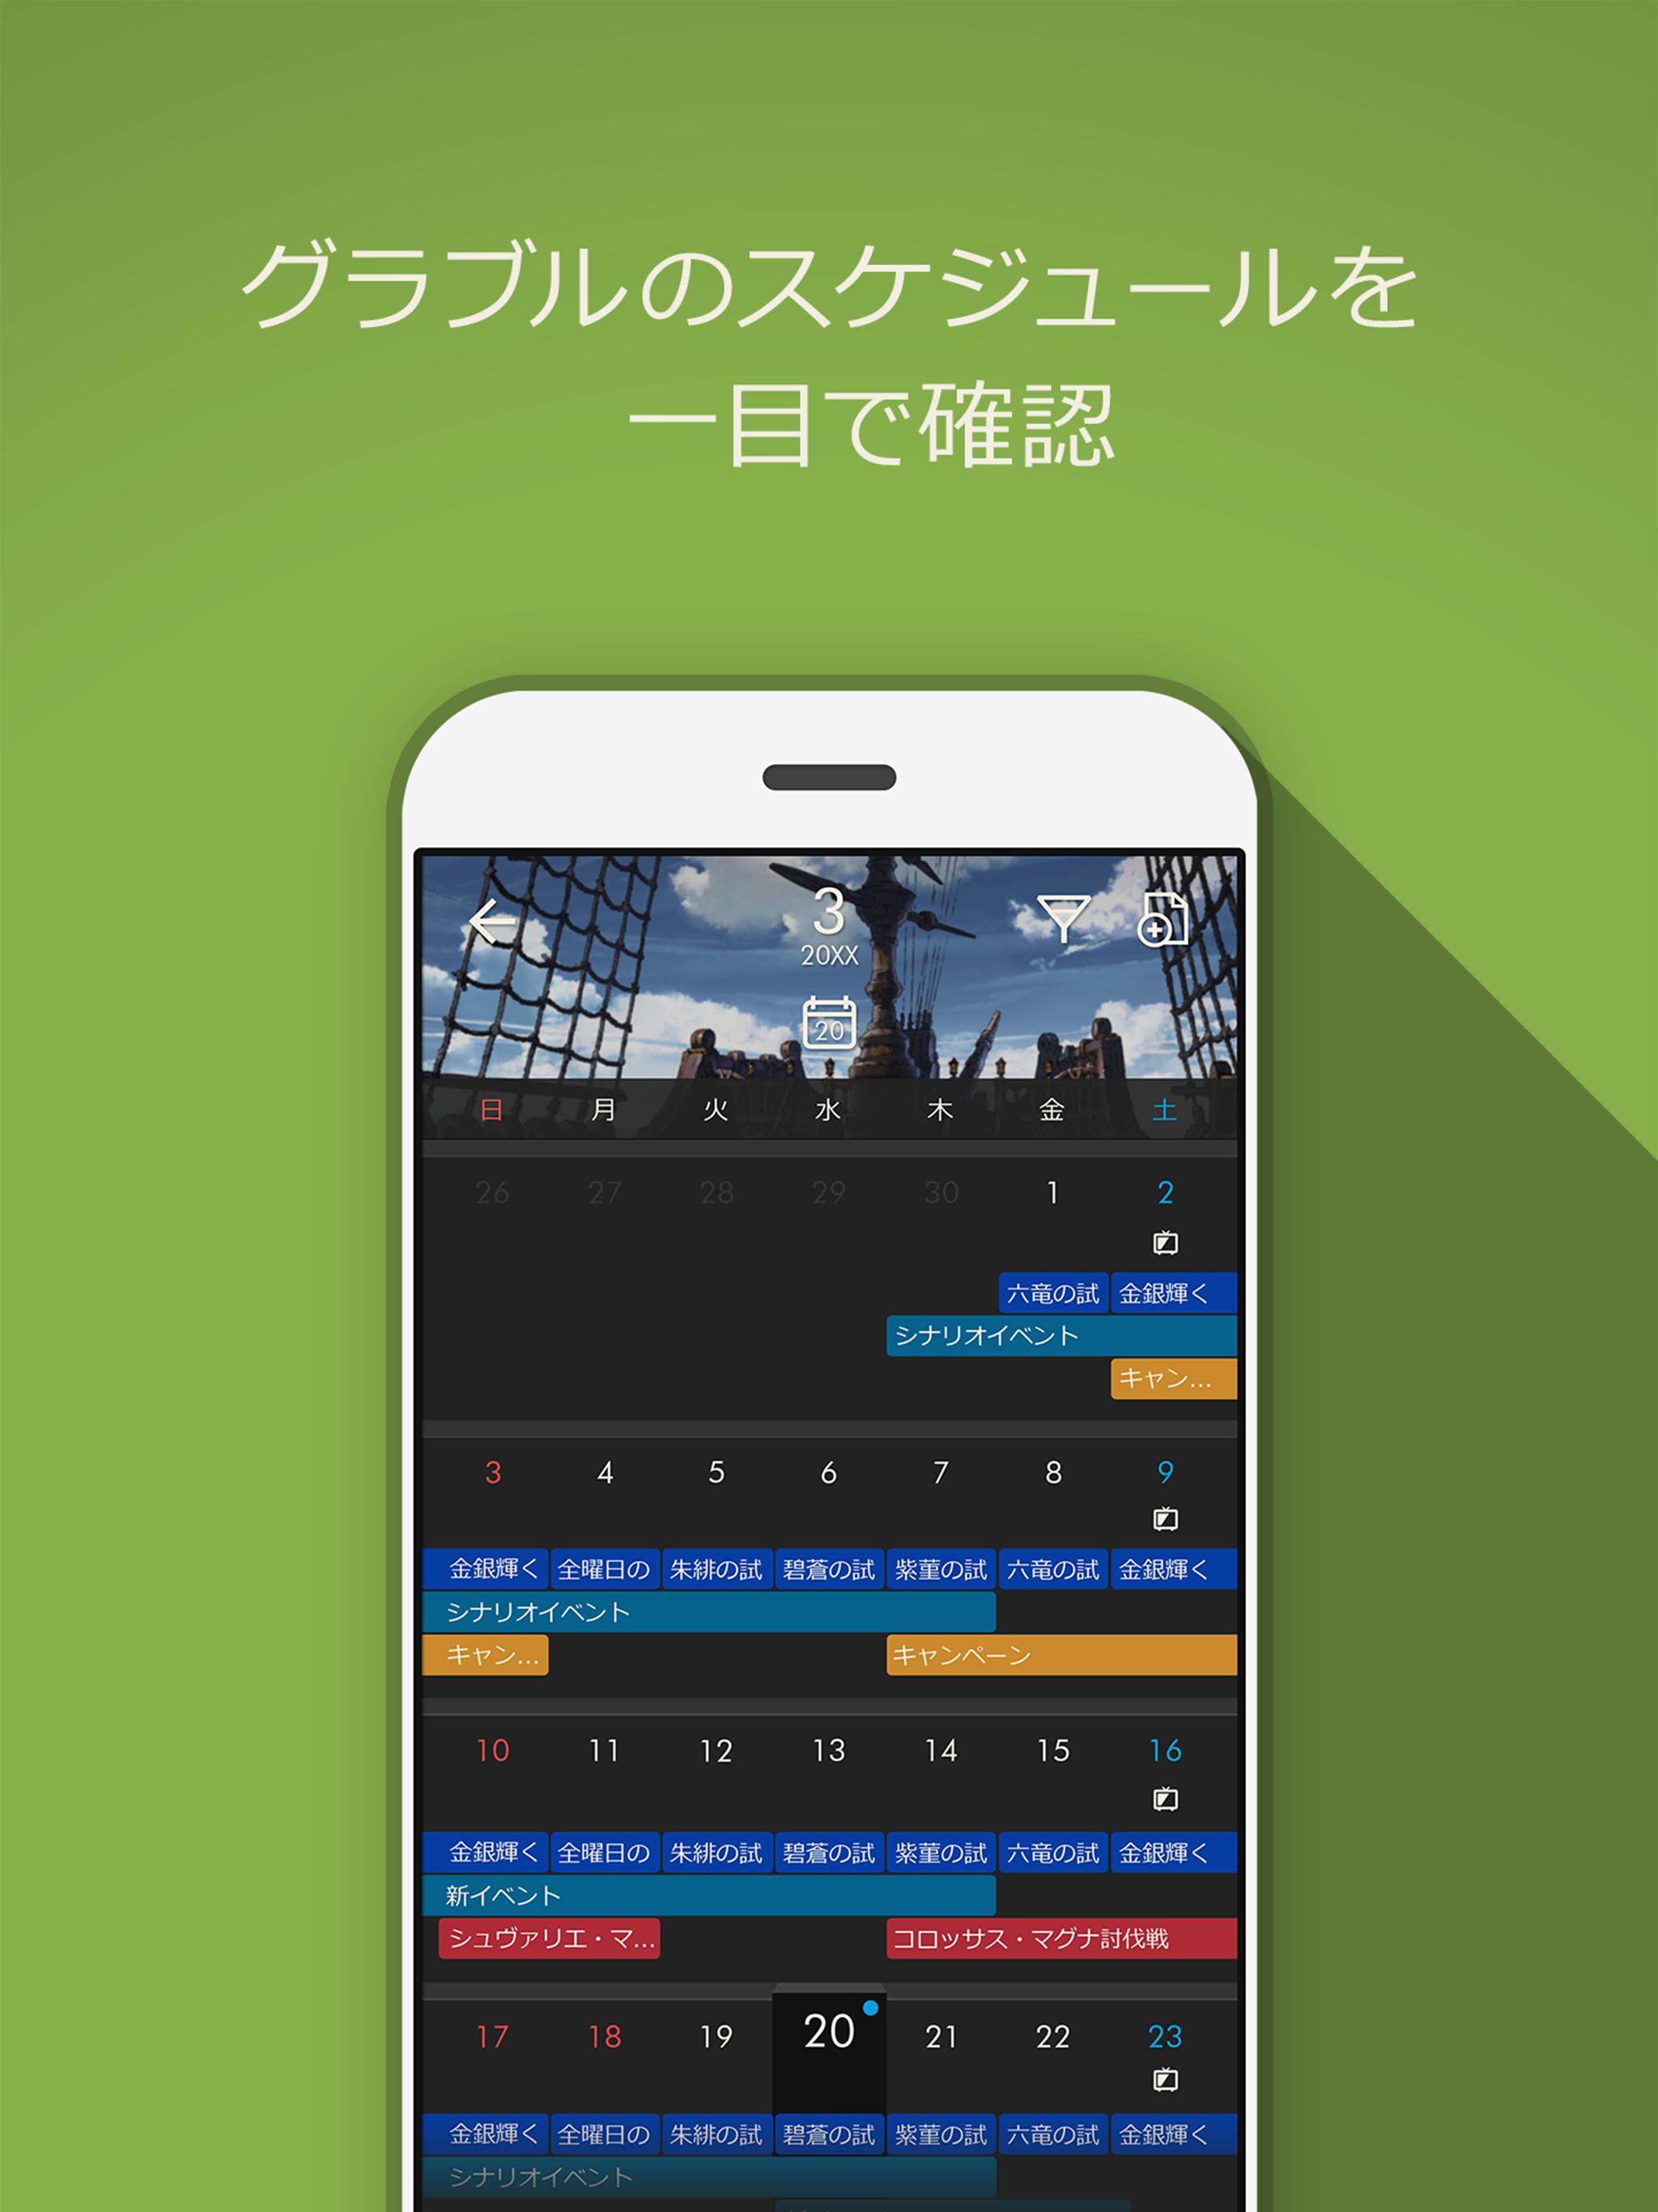 グランブルーファンタジー スカイコンパス For Android Apk Download